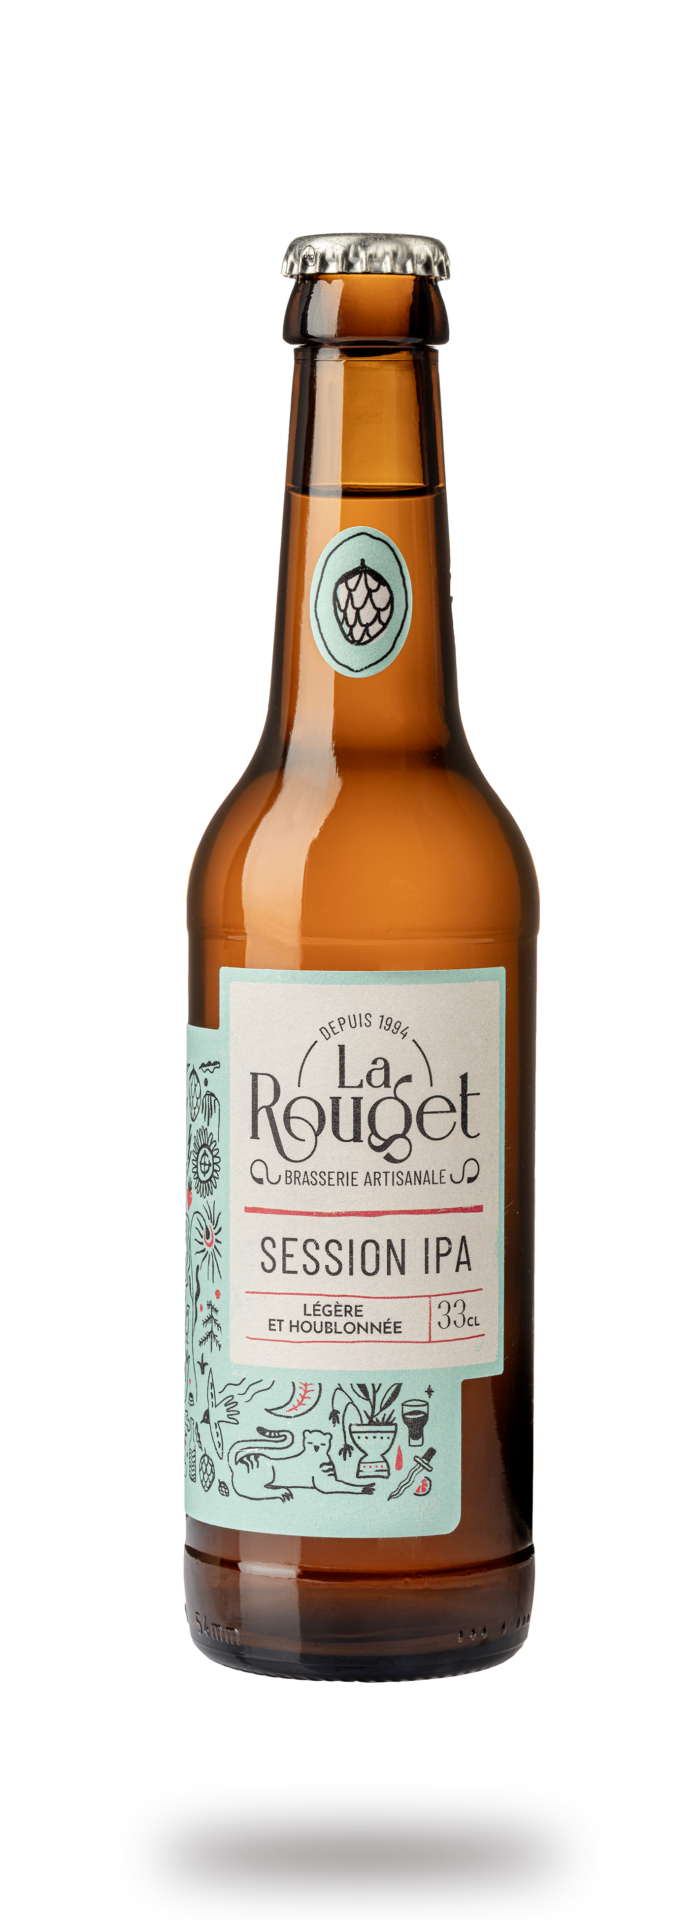 Bière blonde Session IPA 33 – Légère et houblonnée – La Rouget